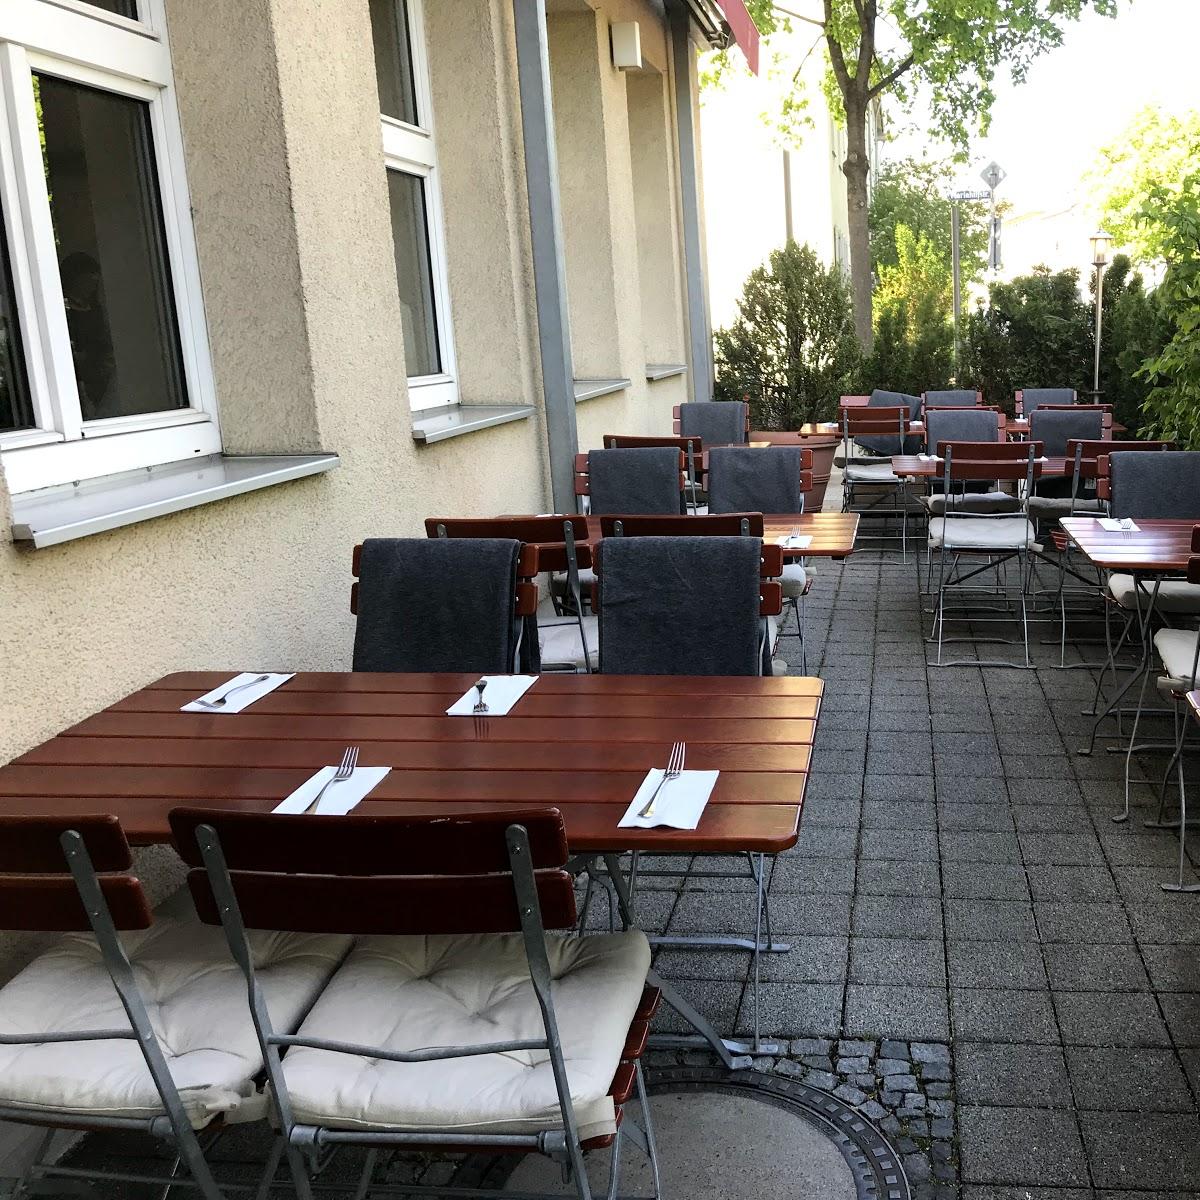 Restaurant "Keko Restaurant  - Authentische türkische Küche" in München